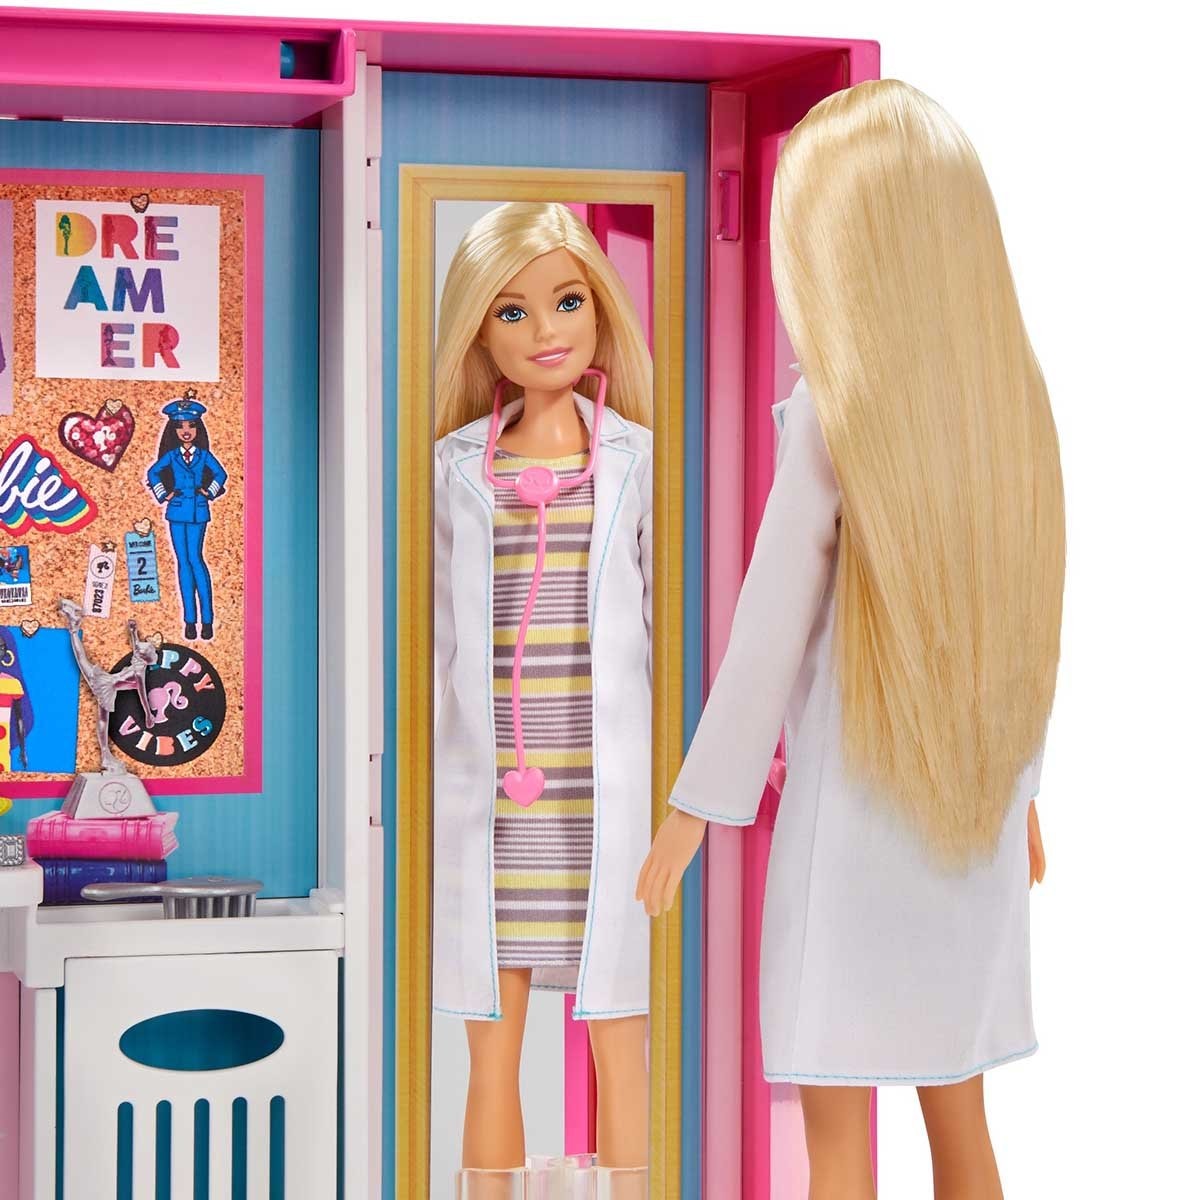 Barbie Fashionista Ropa Y Accesorios Closet de Ensueño